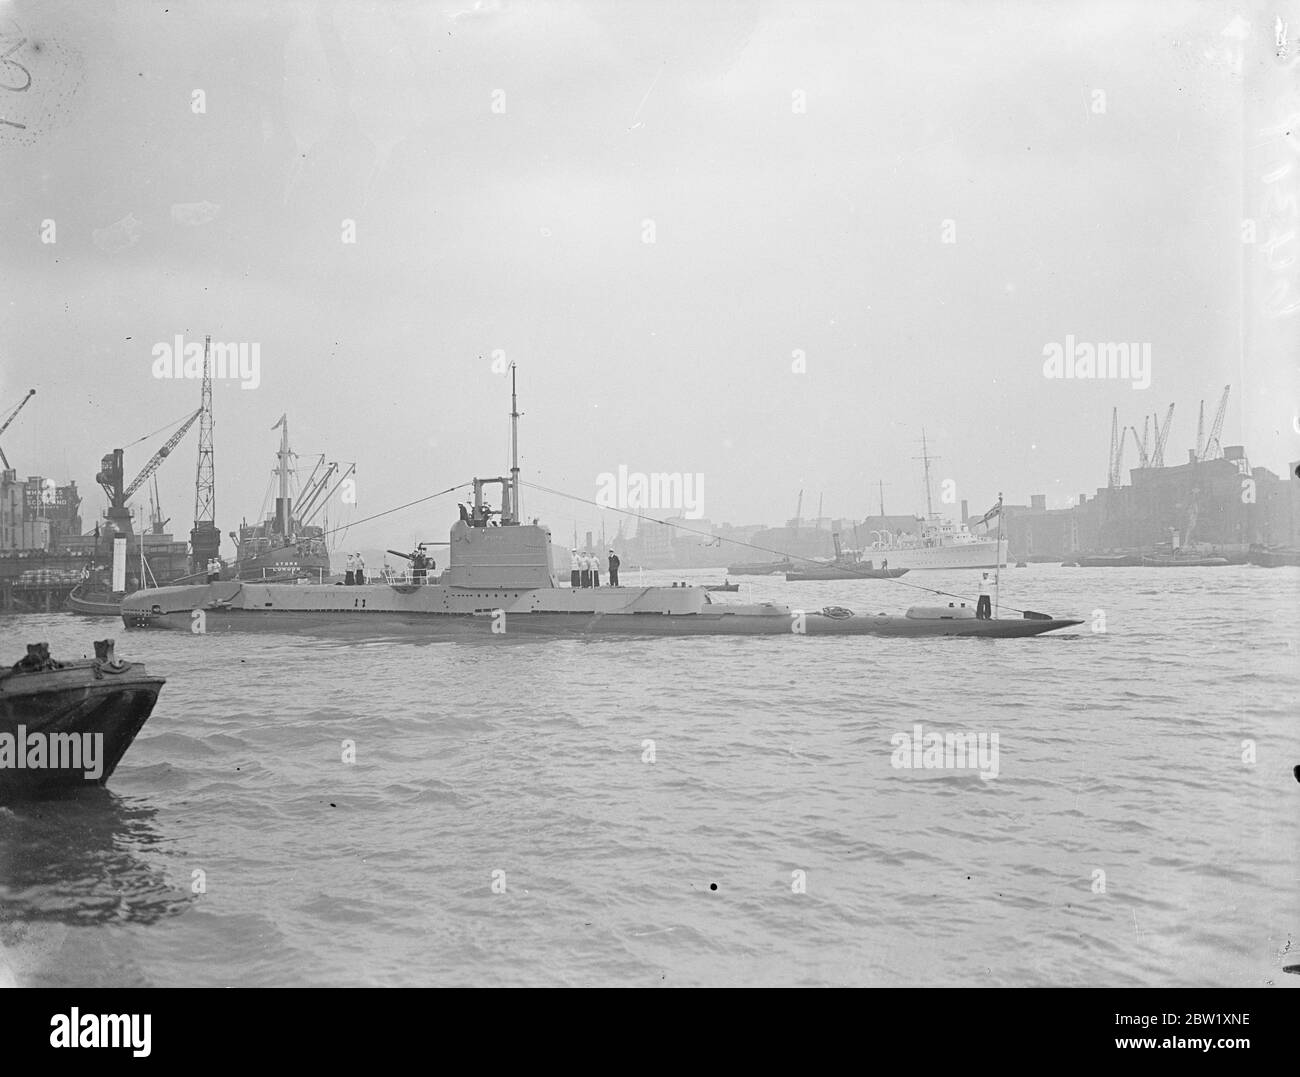 London sieht die Marine. U-Boote in Dock in der Nähe der Tower Bridge. Die U-Boote der Heimatflotte, die im Pool von London zur Krönung stationiert waren, wurden nur wenige Stunden nach ihrer Ankunft für die Besichtigung geöffnet. Foto zeigt: HMS Starfish (19S) Group One U-Boot der britischen S-Klasse im St Katharine's Dock, London. Mai 1937 Stockfoto